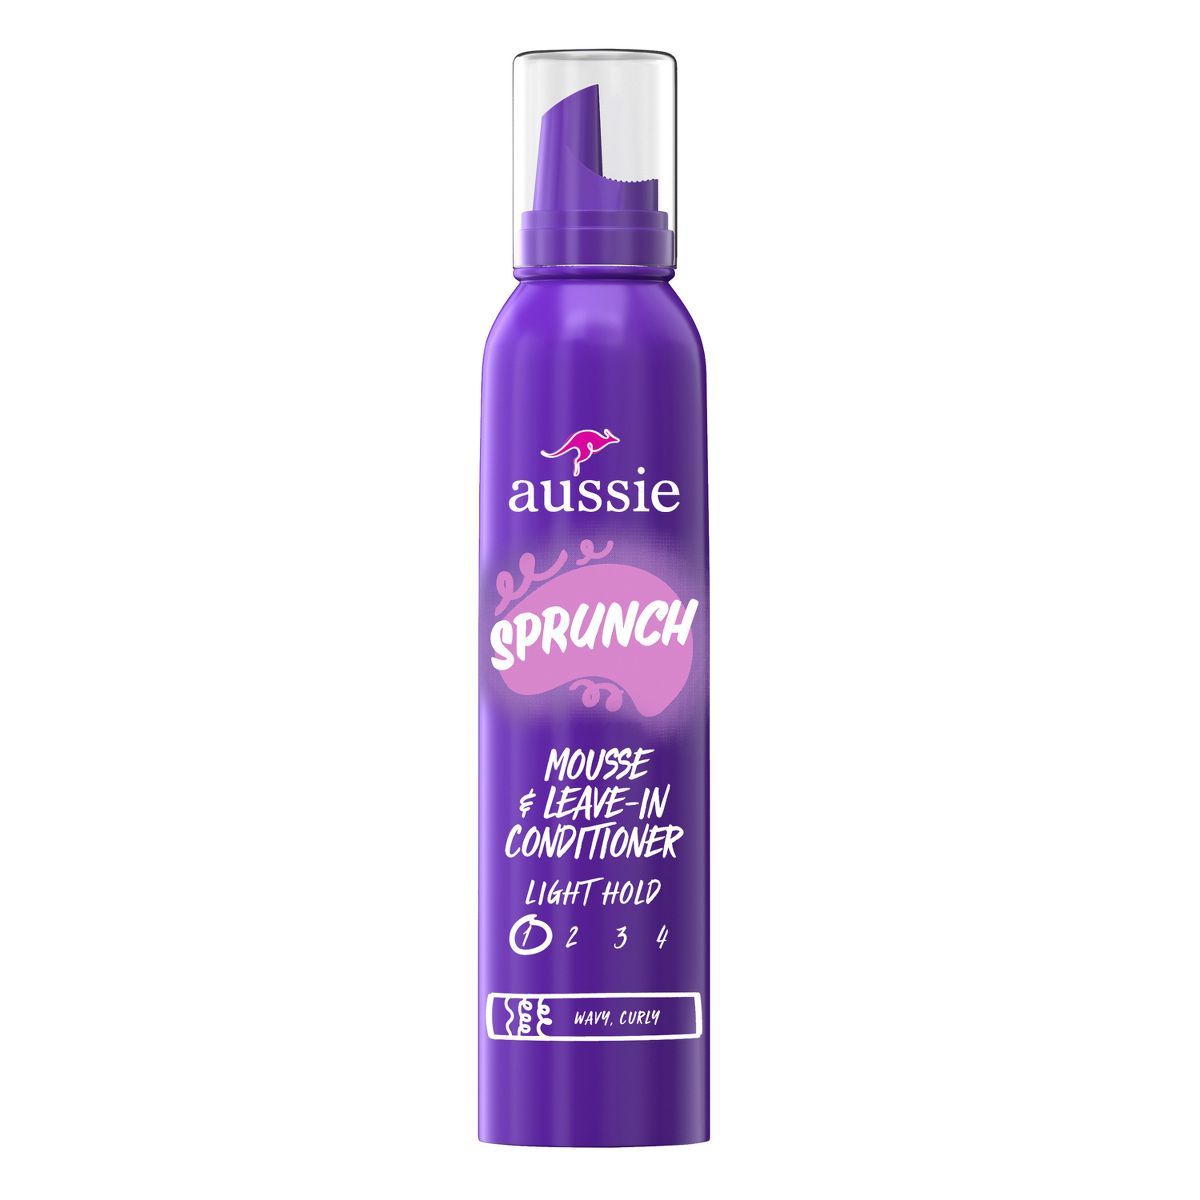 Aussie Sprunch Hair Mousse - 6oz | Target